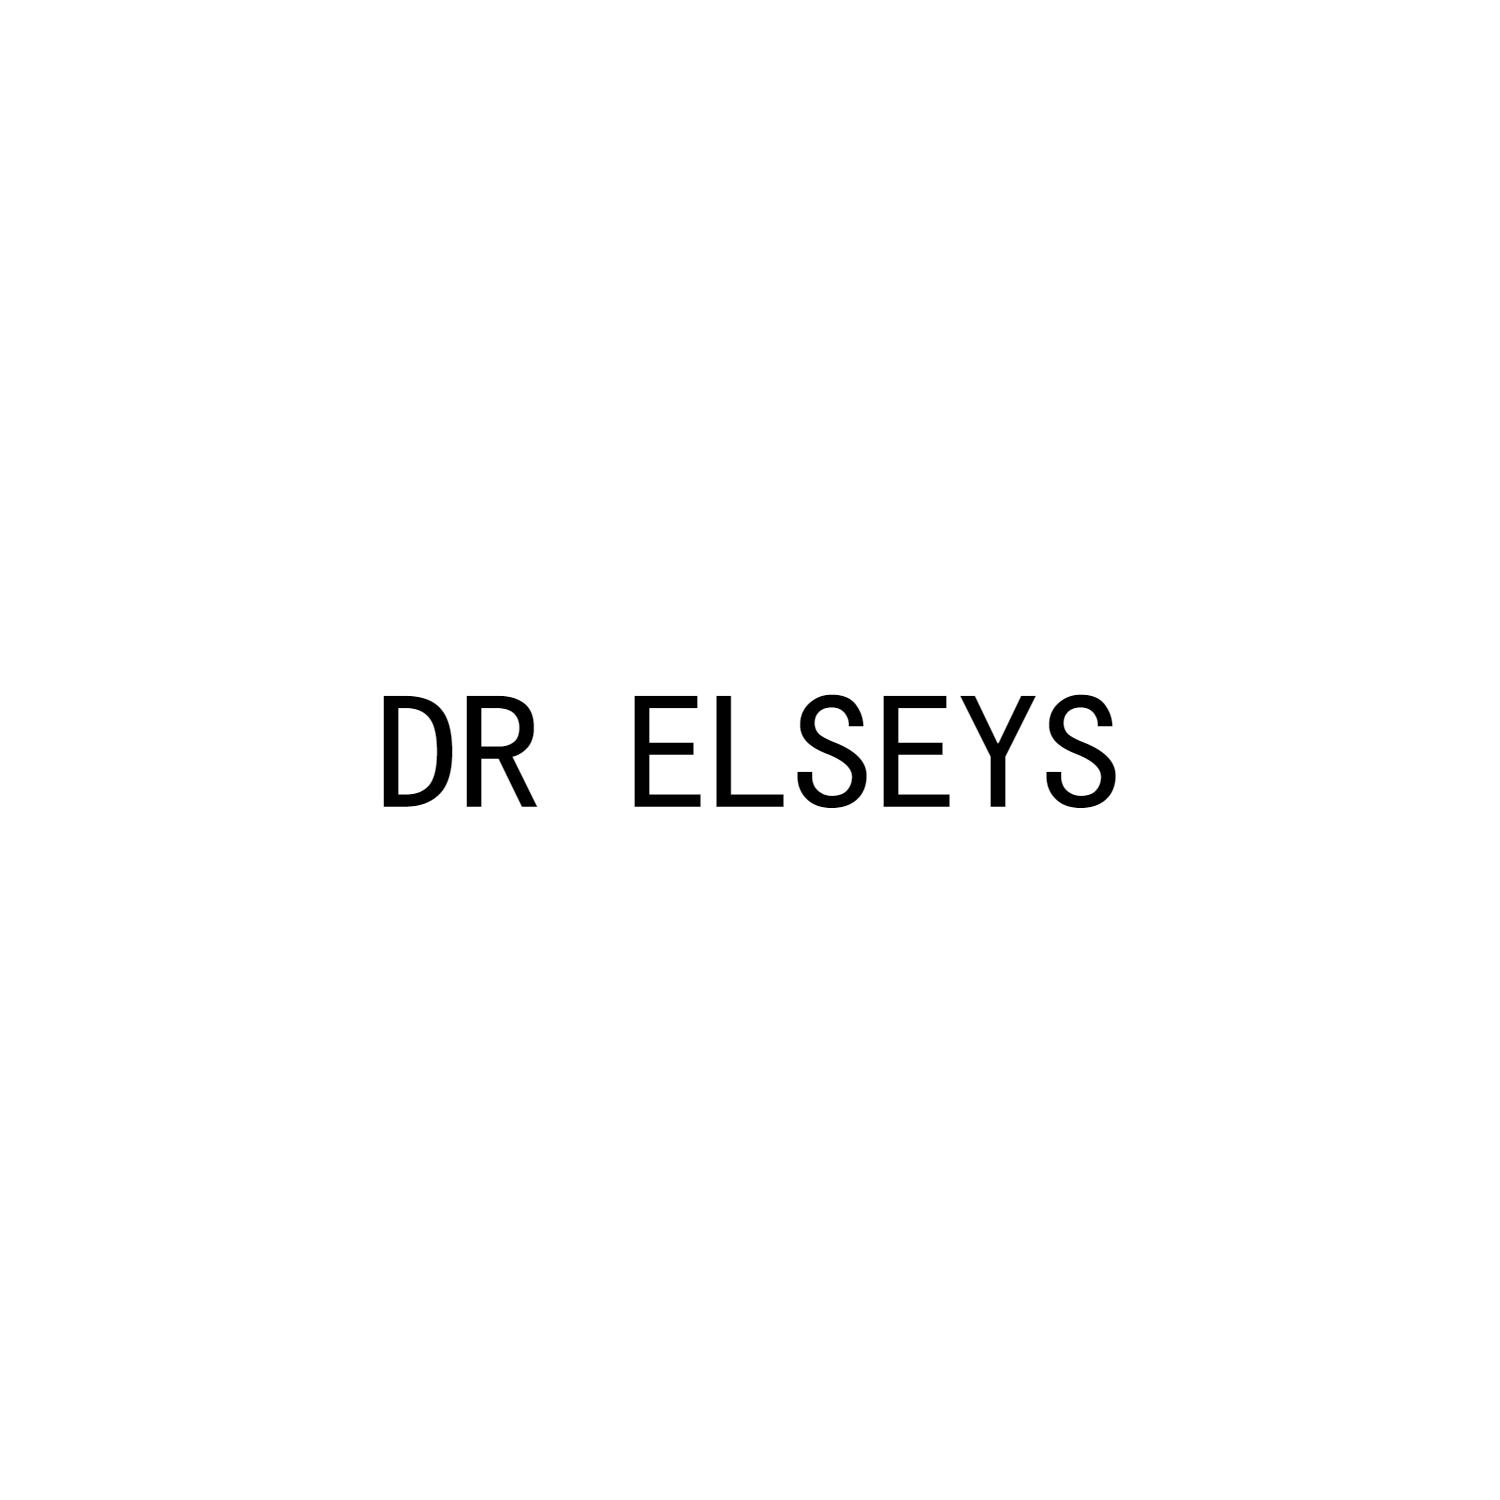 DR ELSEYS